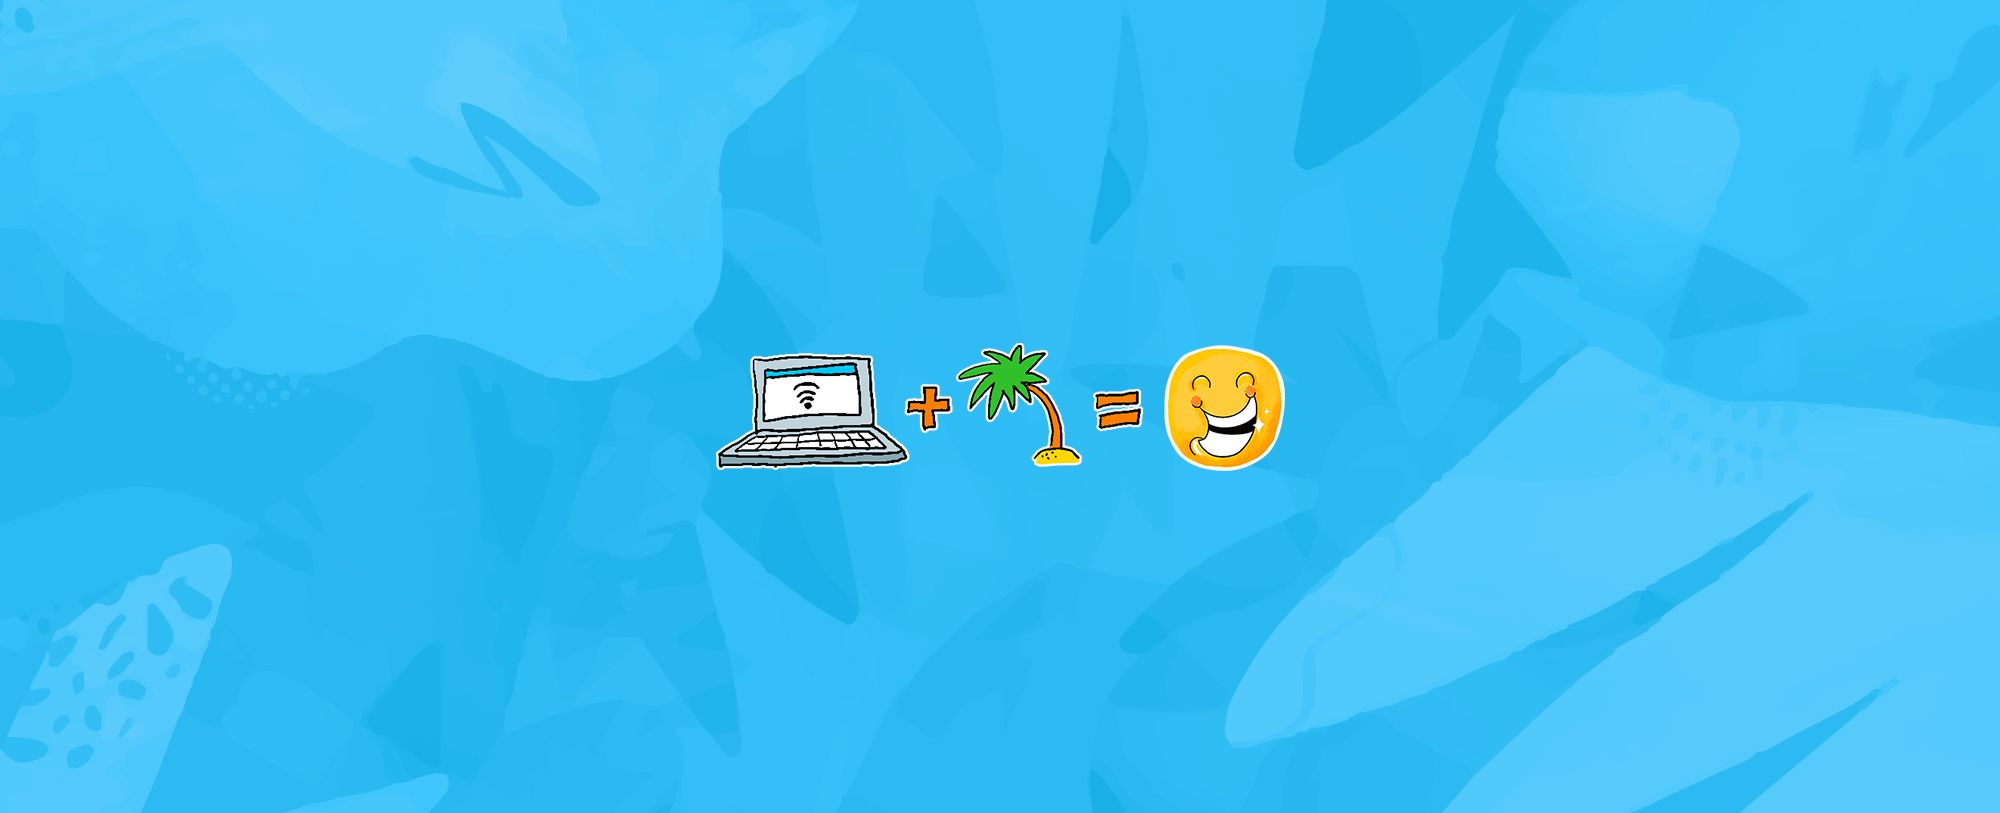 illustrations remote ordinateur palmier smiley